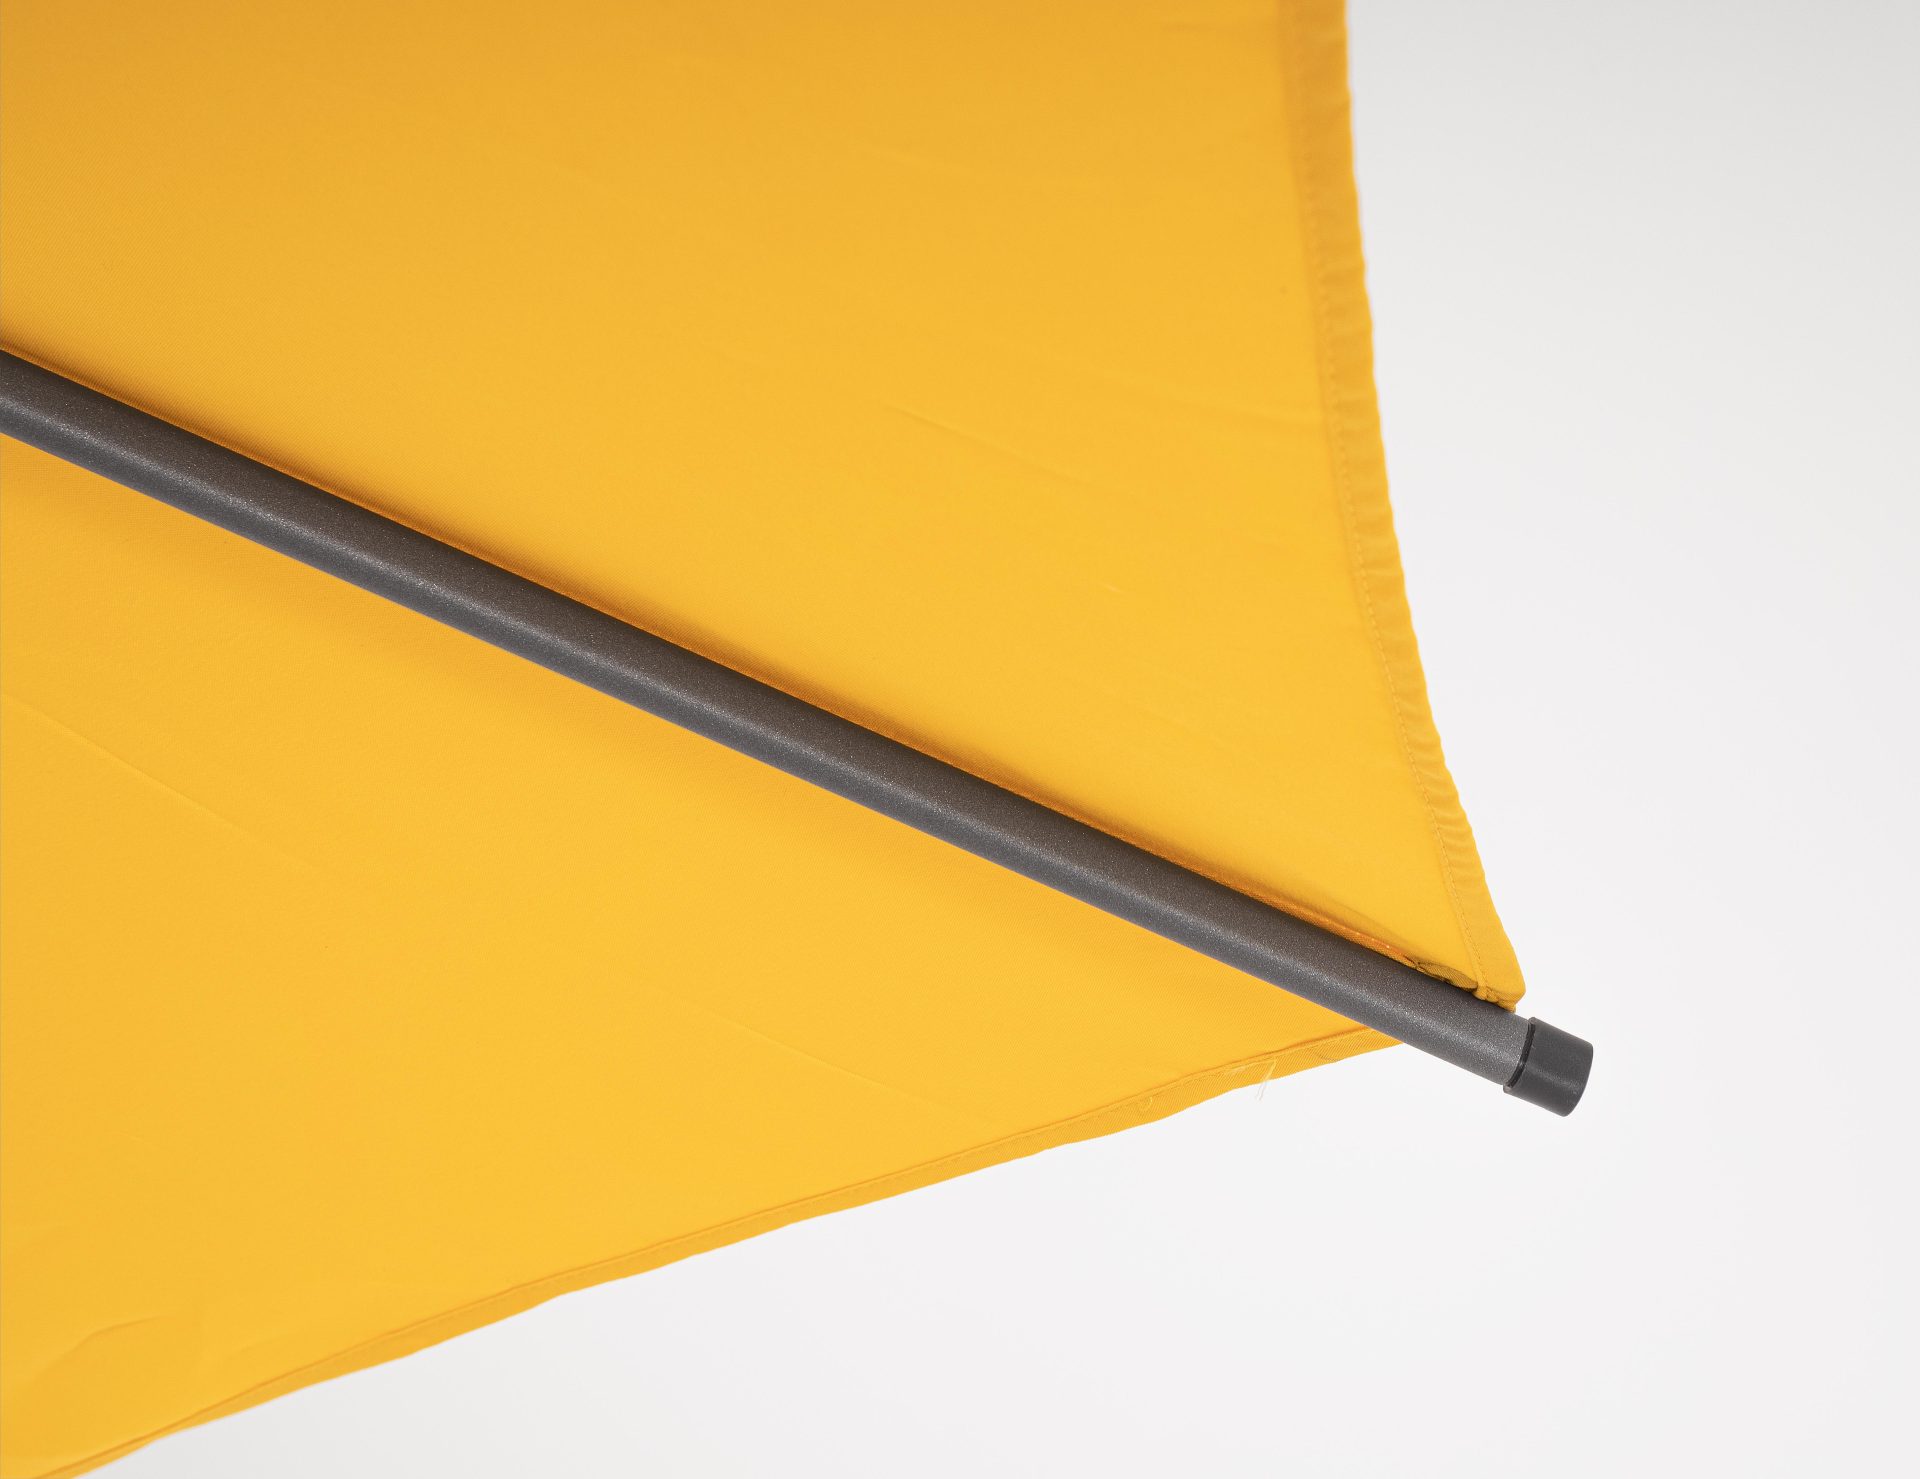 Der Sonnenschirm Rio überzeugt mit seinem klassischen Design. Gefertigt wurde er aus einer Polyester Plane, welche einen gelben Farbton besitzt. Das Gestell ist aus Aluminium und hat eine Anthrazit Farbe. Der Sonnenschirm verfügt über einen Durchmesser vo